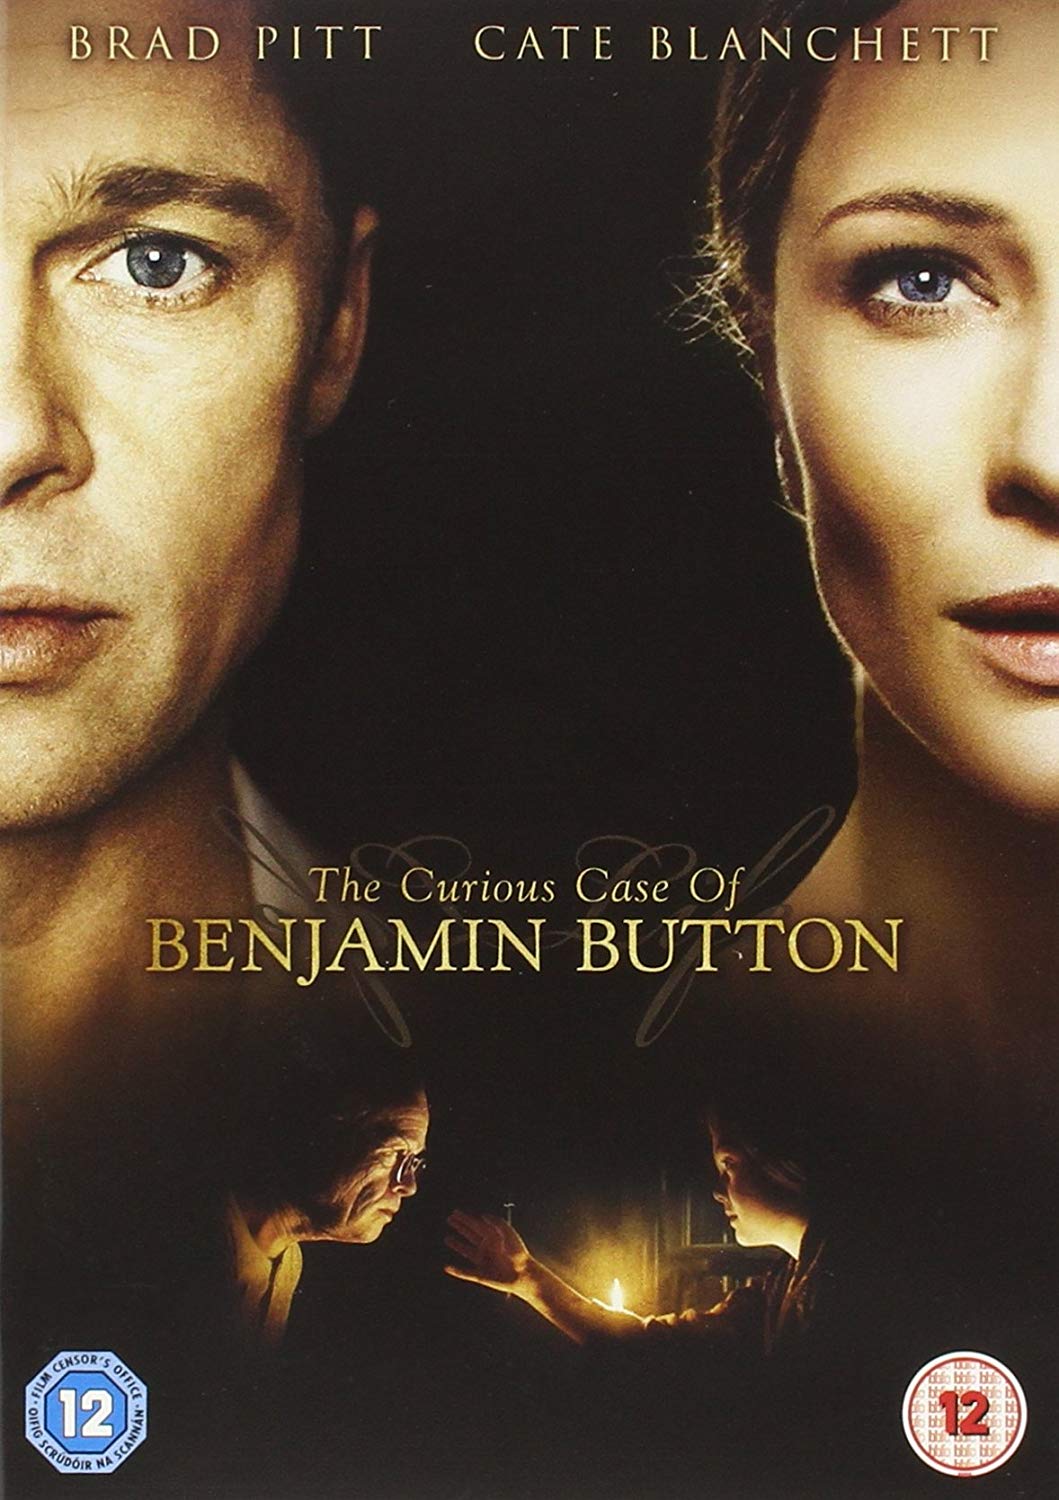 The Curious Case Of Benjamin Button [DVD] [2009]: Amazon.co.uk: Brad